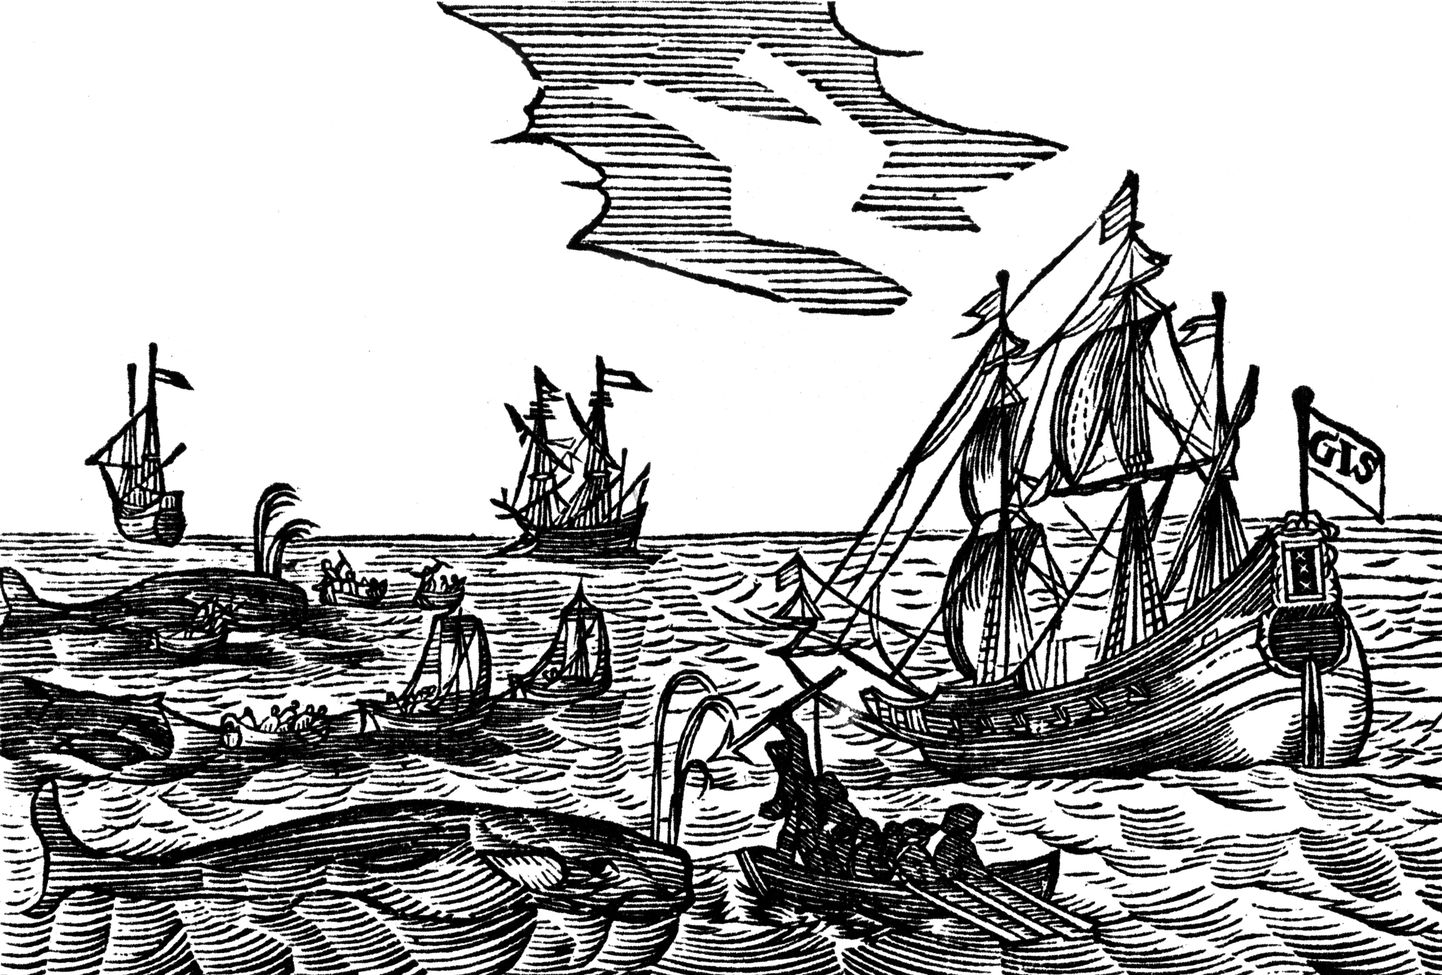 Vaalapüüdjaid kujutav puidulõige 17. sajandist